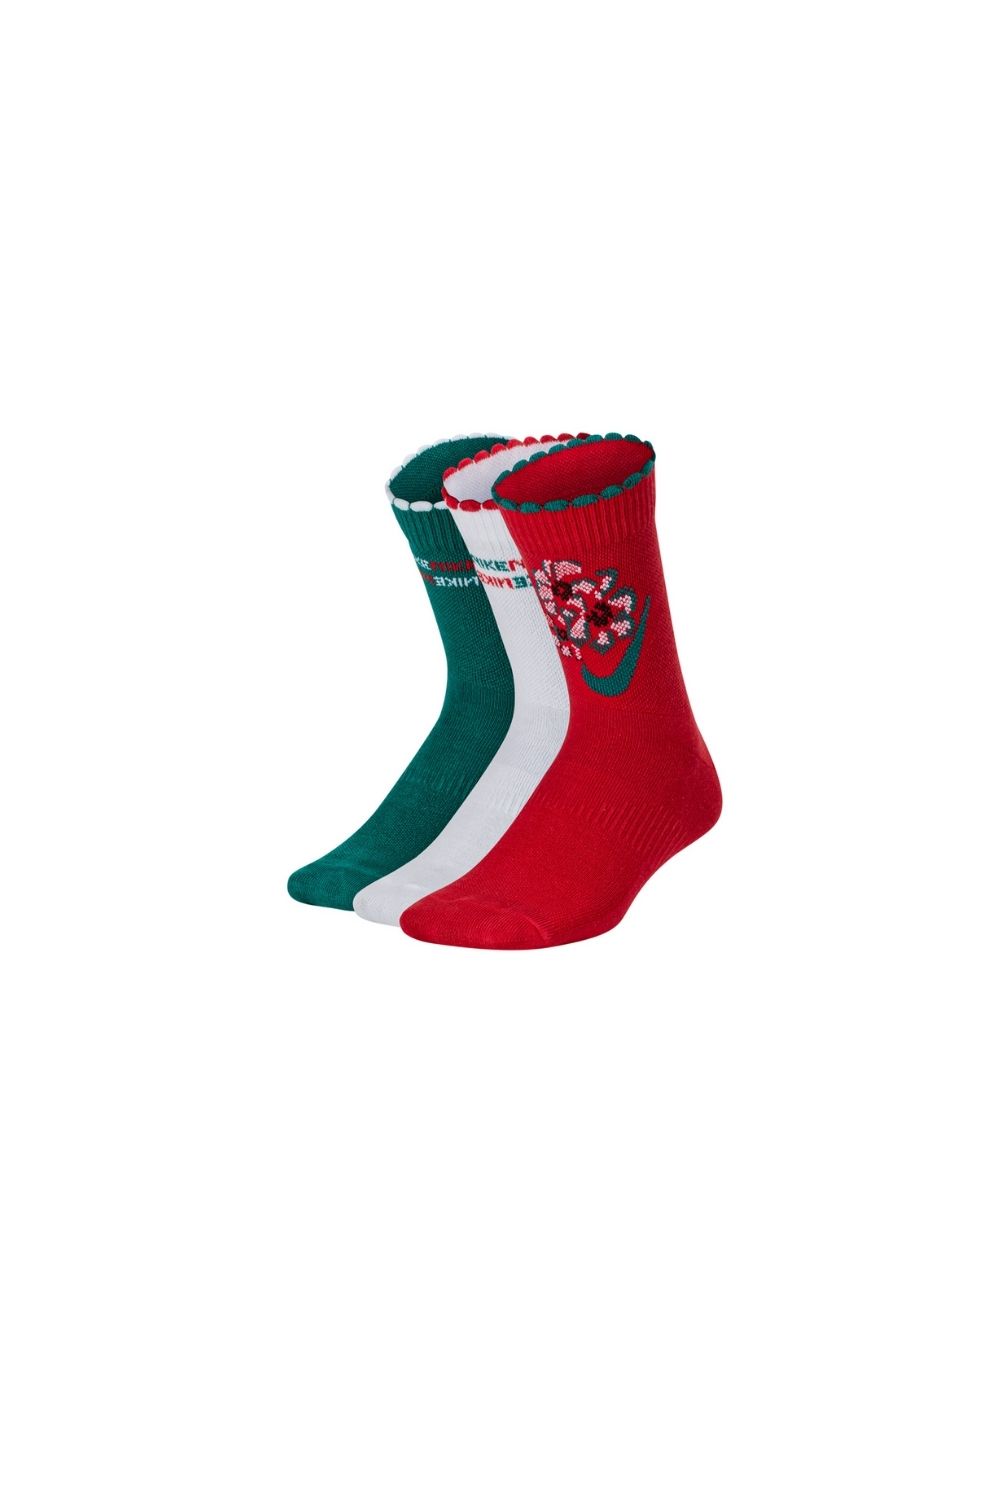 NIKE - Παιδικές κάλστες NIKE EVERYDAY CUSH κόκκινο-πράσινο-λευκό Παιδικά/Boys/Αξεσουάρ/Κάλτσες